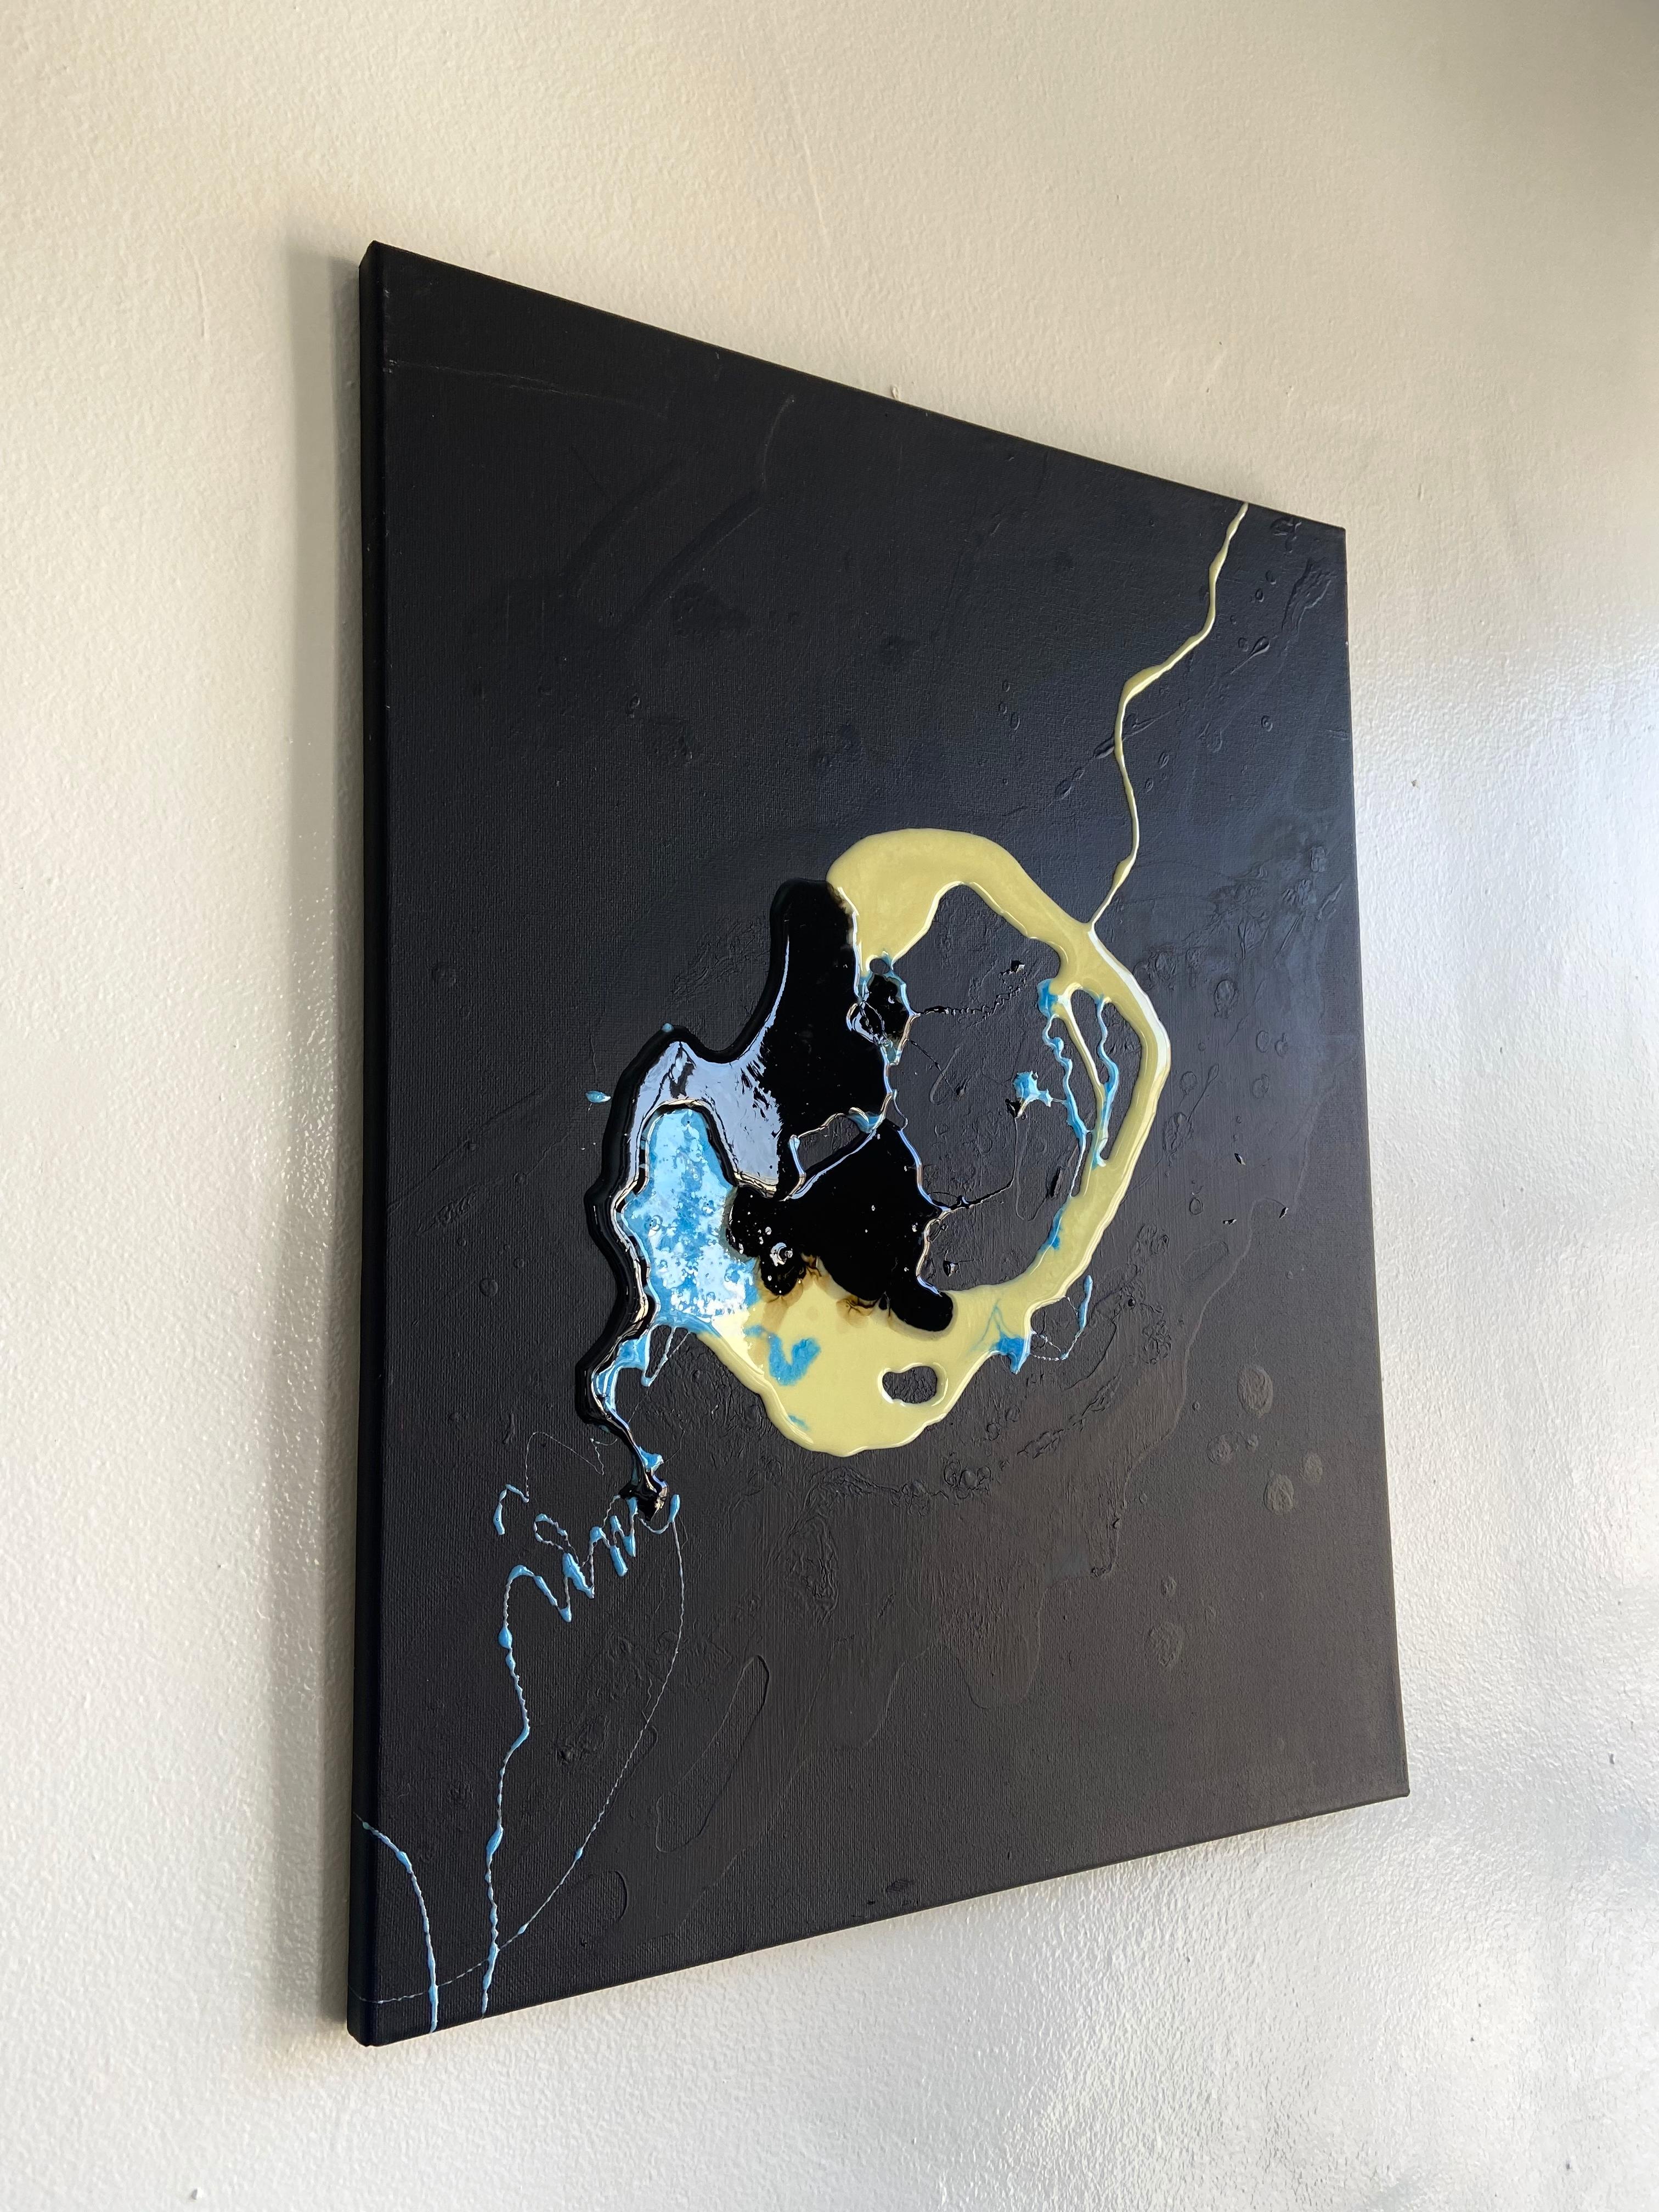 Face liquide - art d'abstraction réalisé en bleu, jaune, noir et blanc - Noir Abstract Painting par Lena Cher